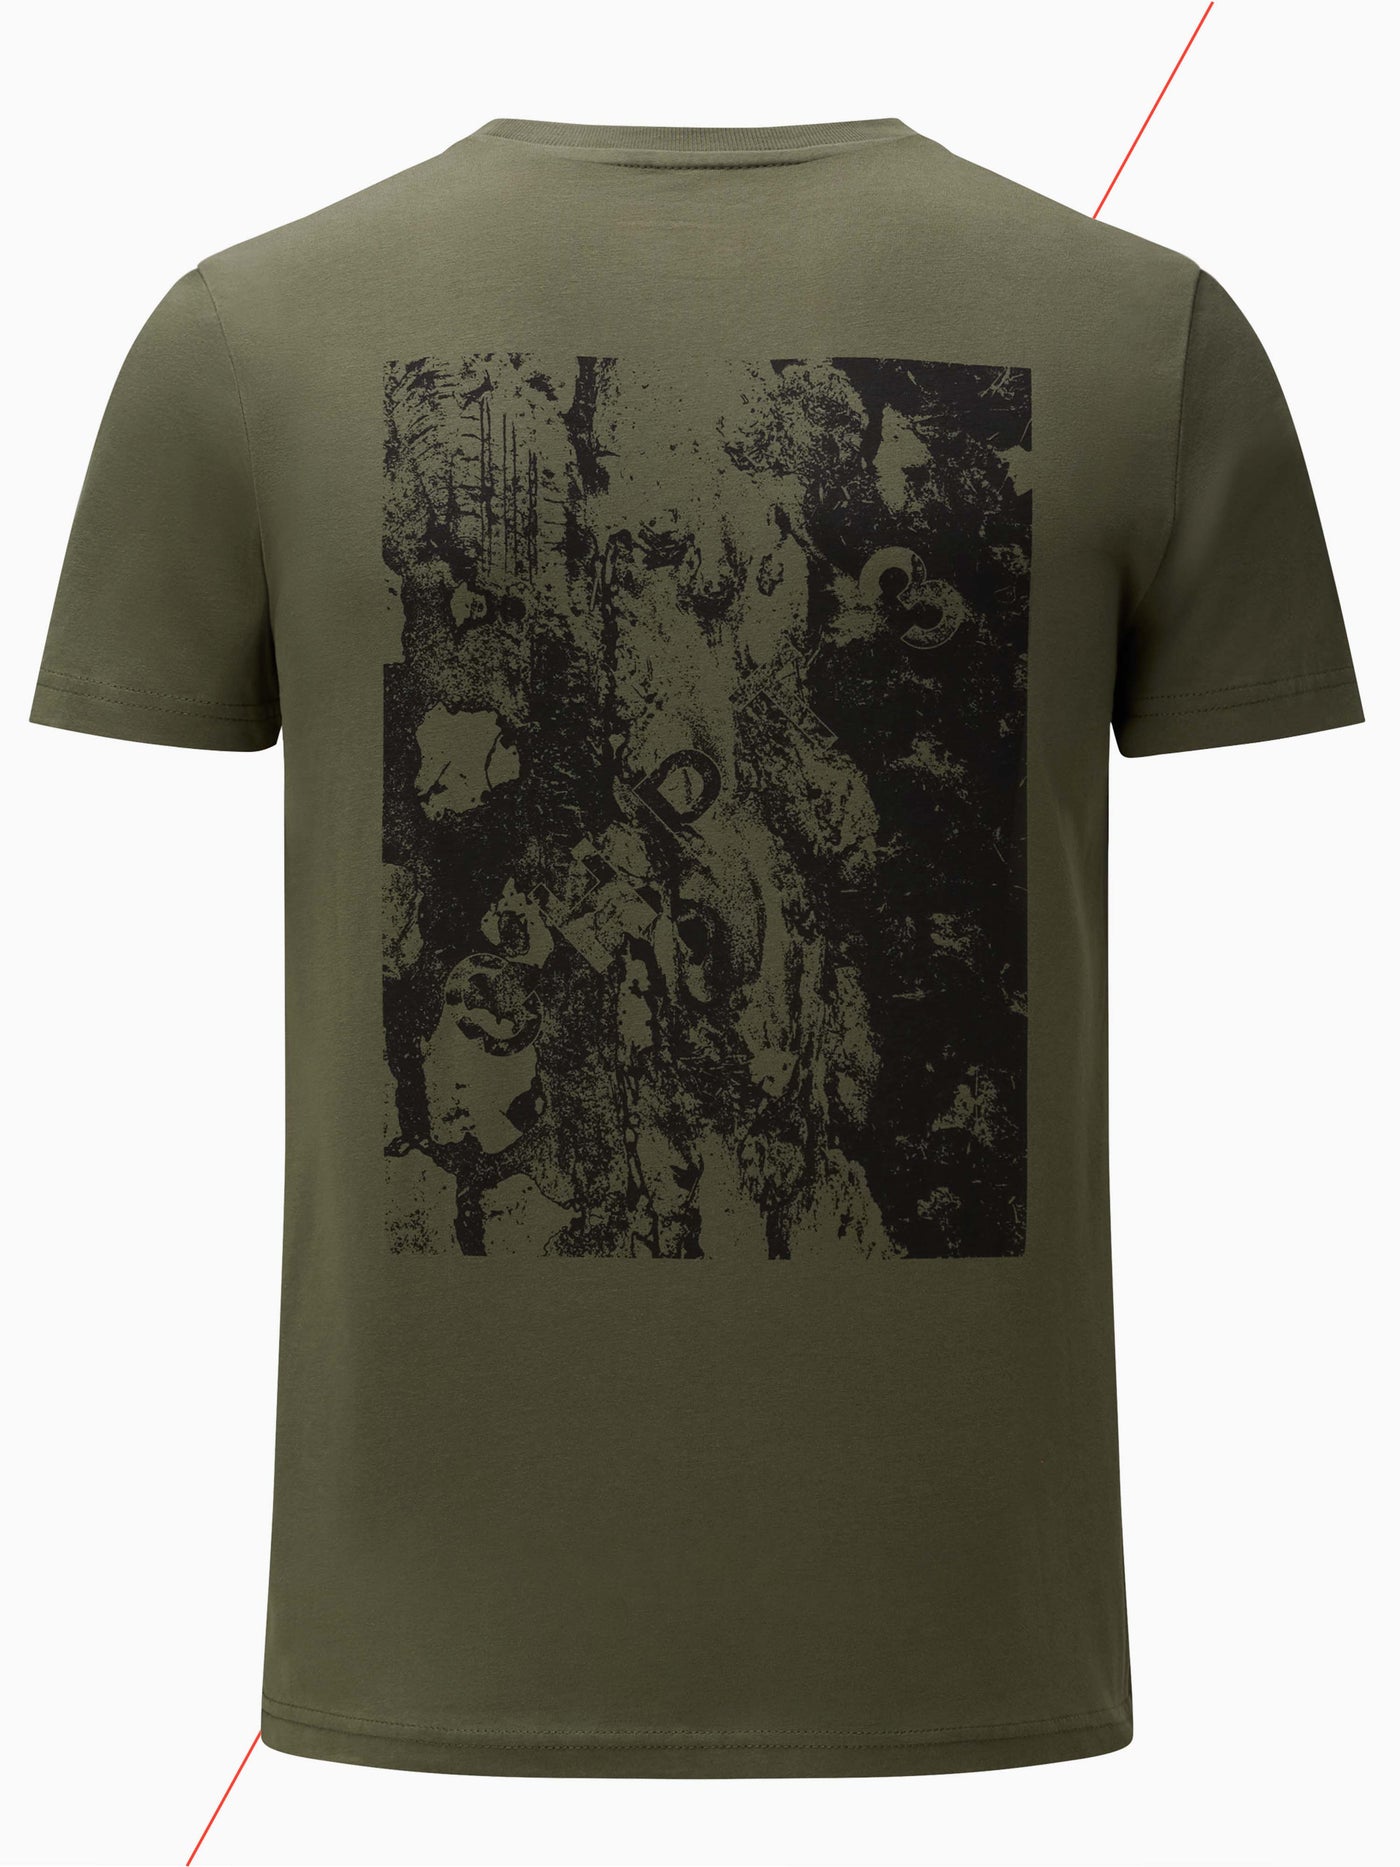 Essential Roubaix Graphic Unisex T-Shirt - Khaki